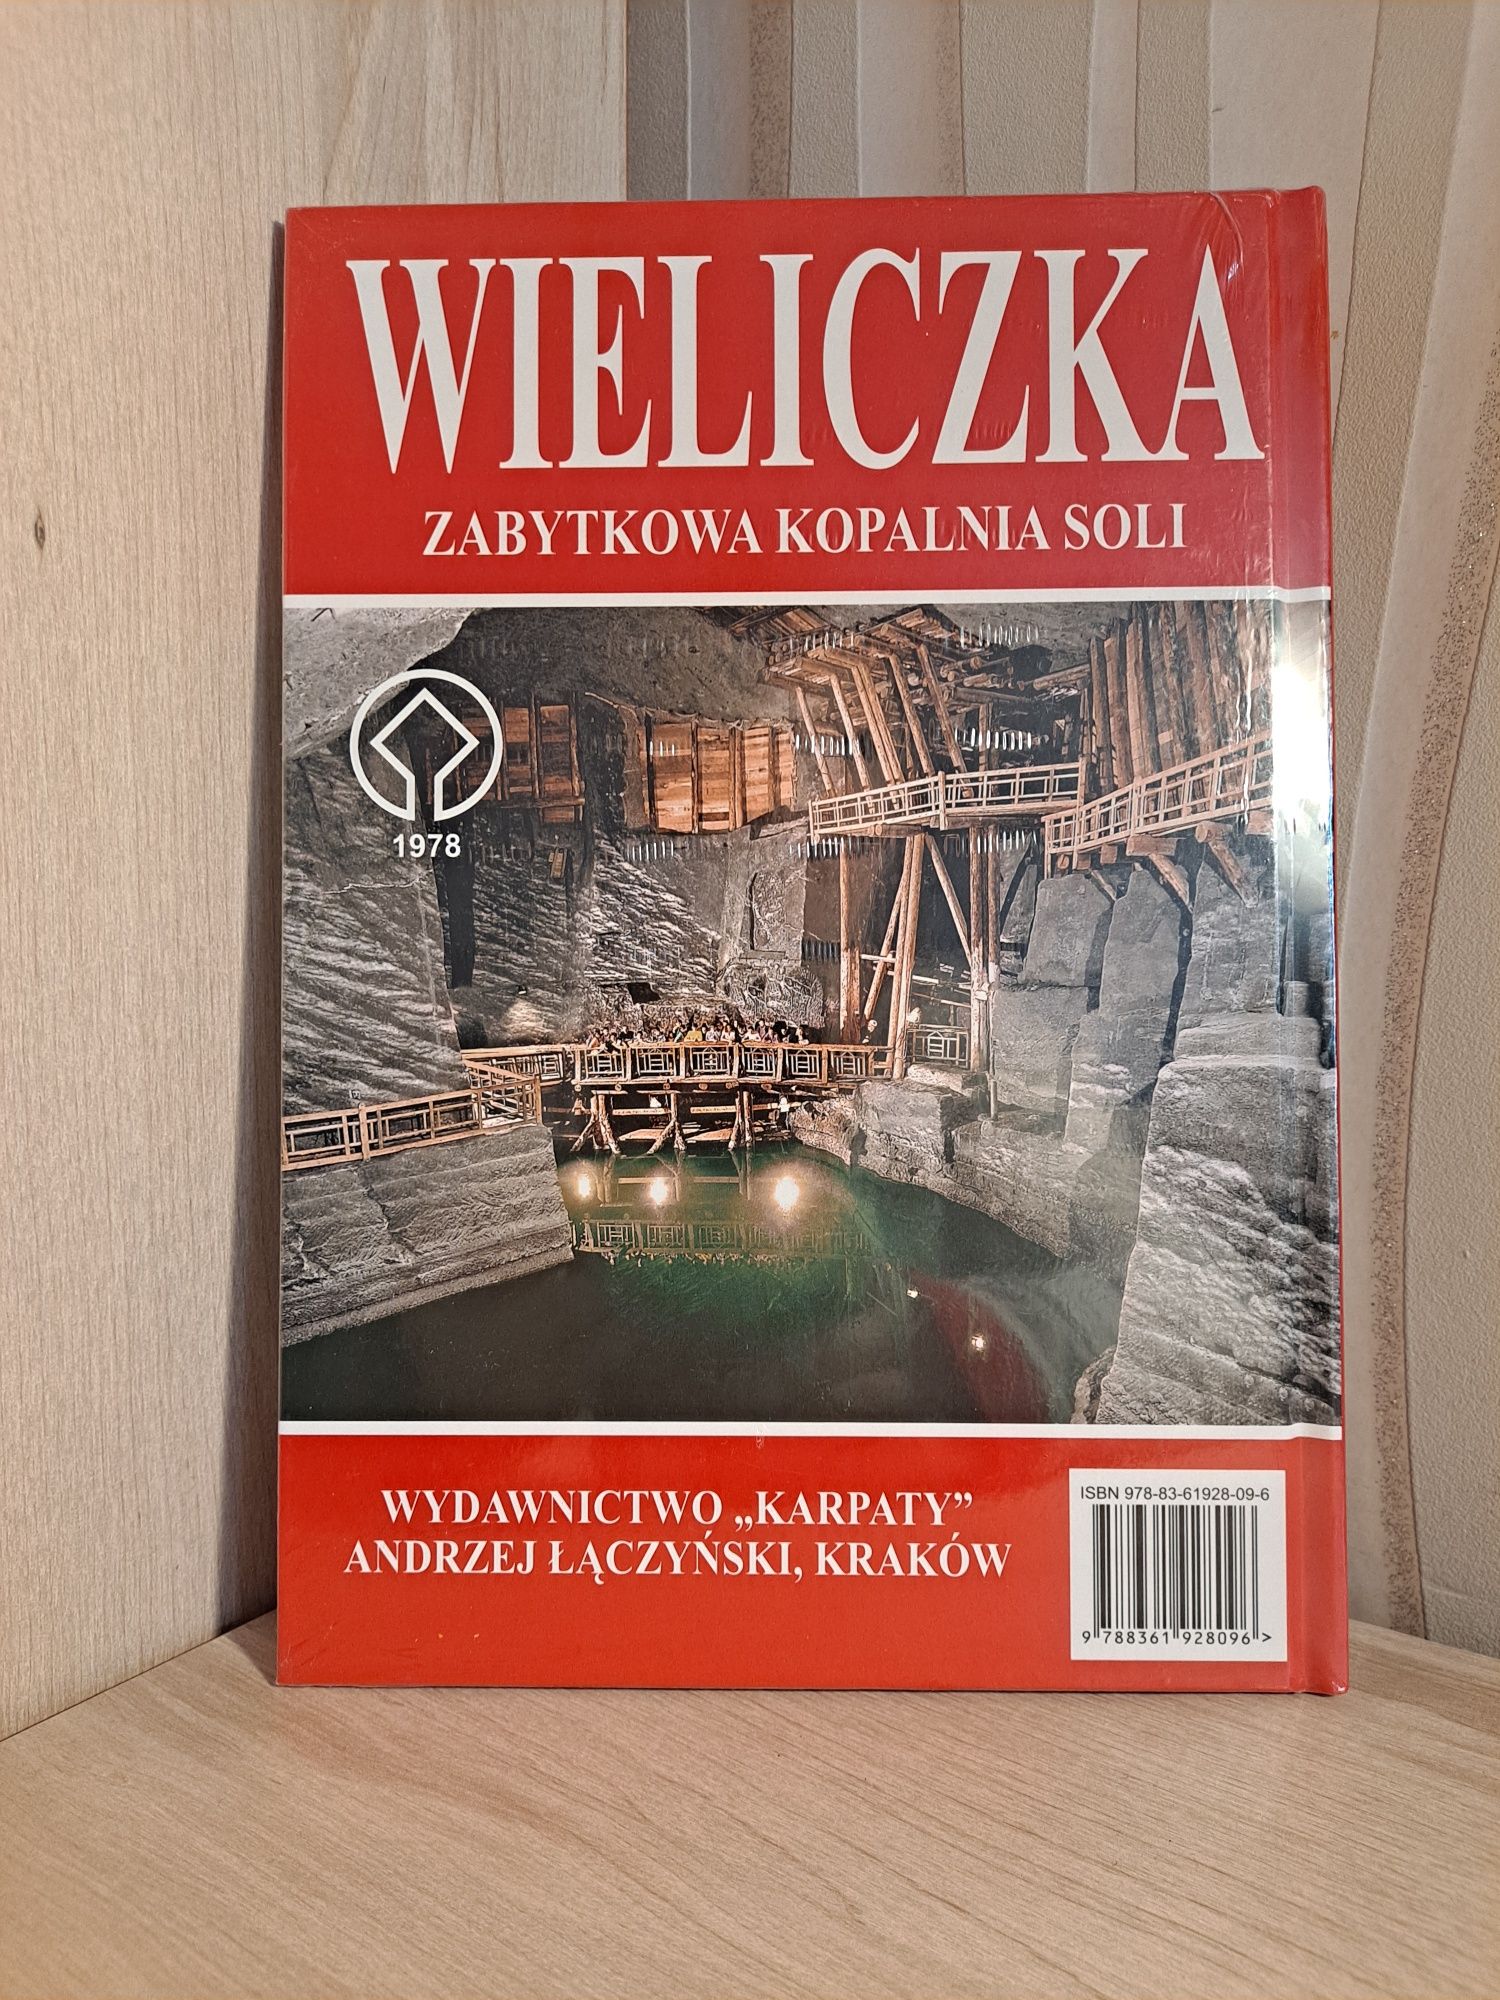 Książka "Wieliczka"